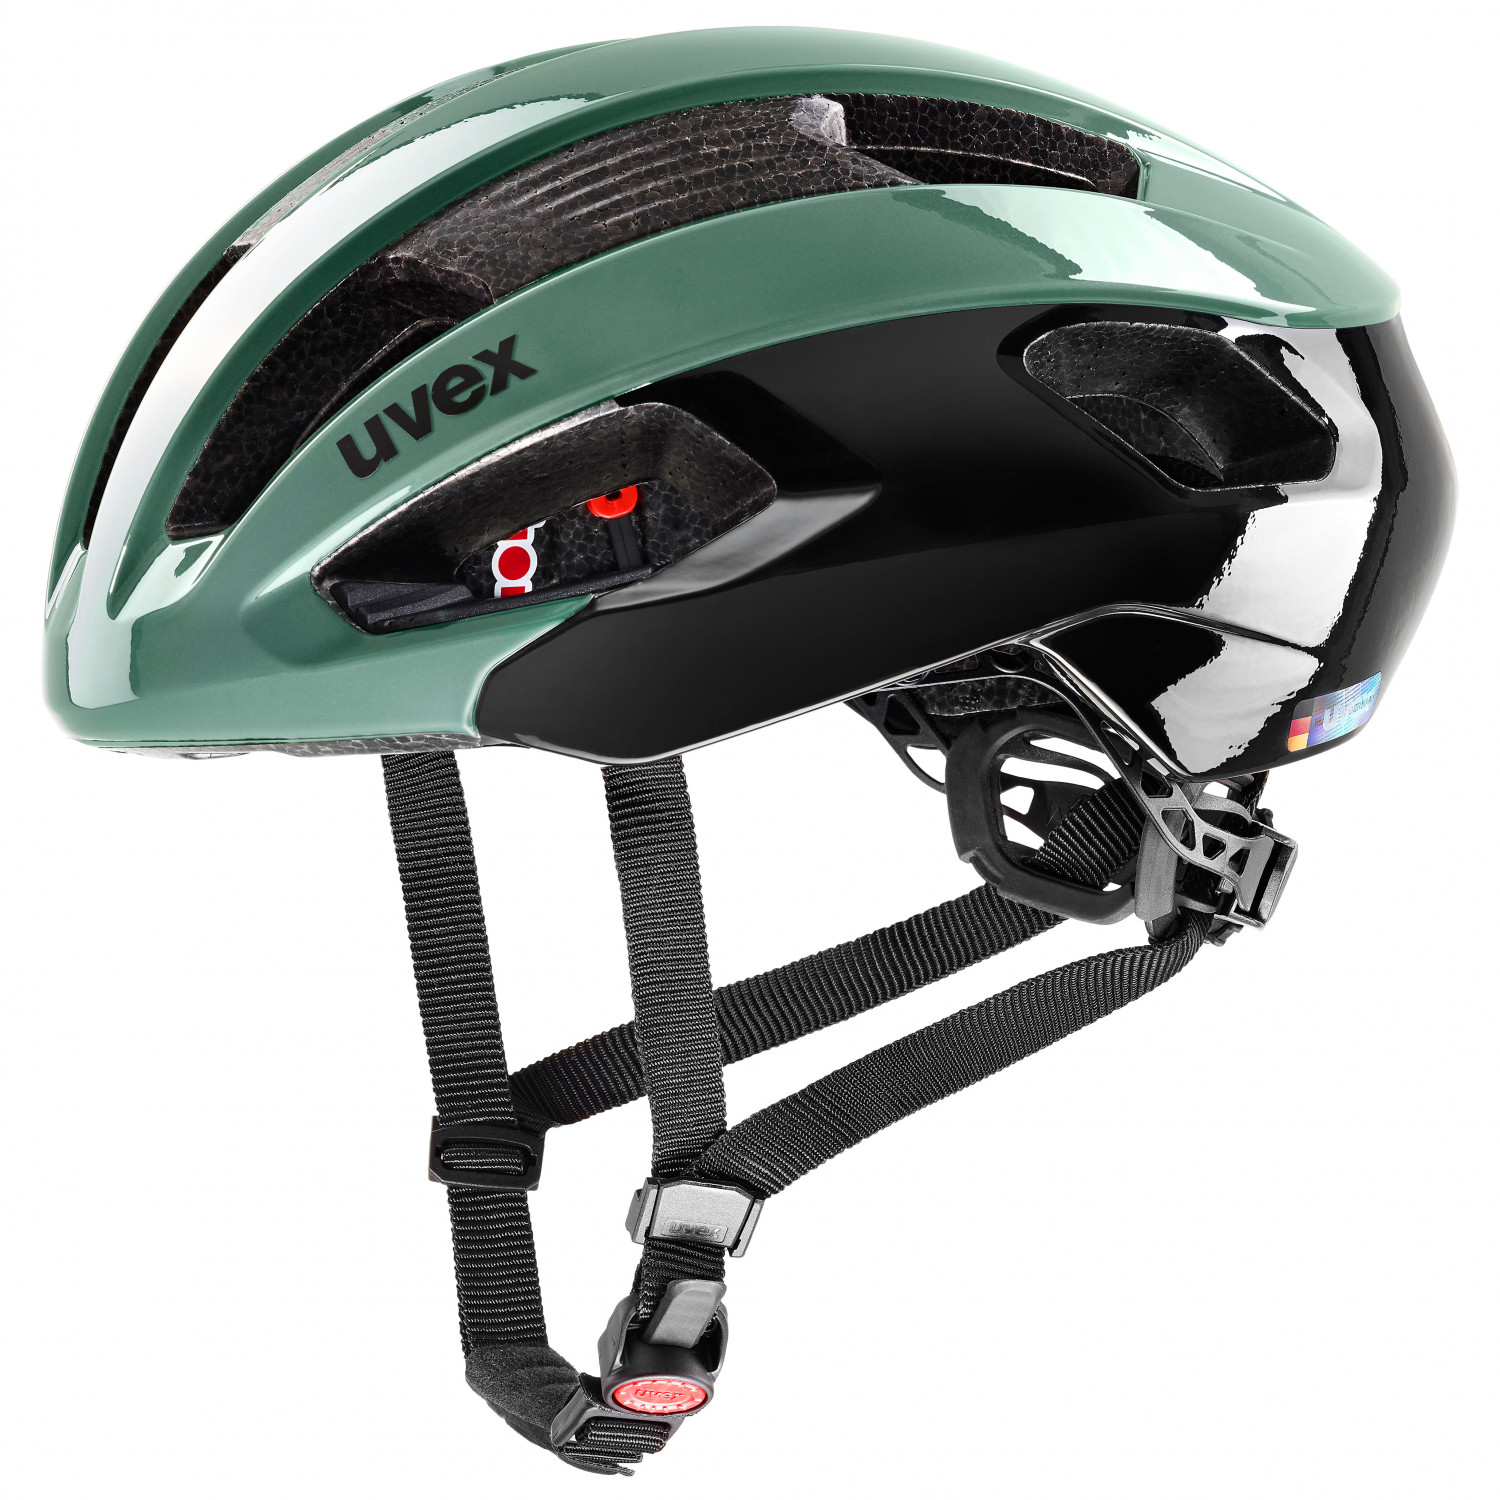 Велосипедный шлем Uvex Rise, цвет Moss Green/Black